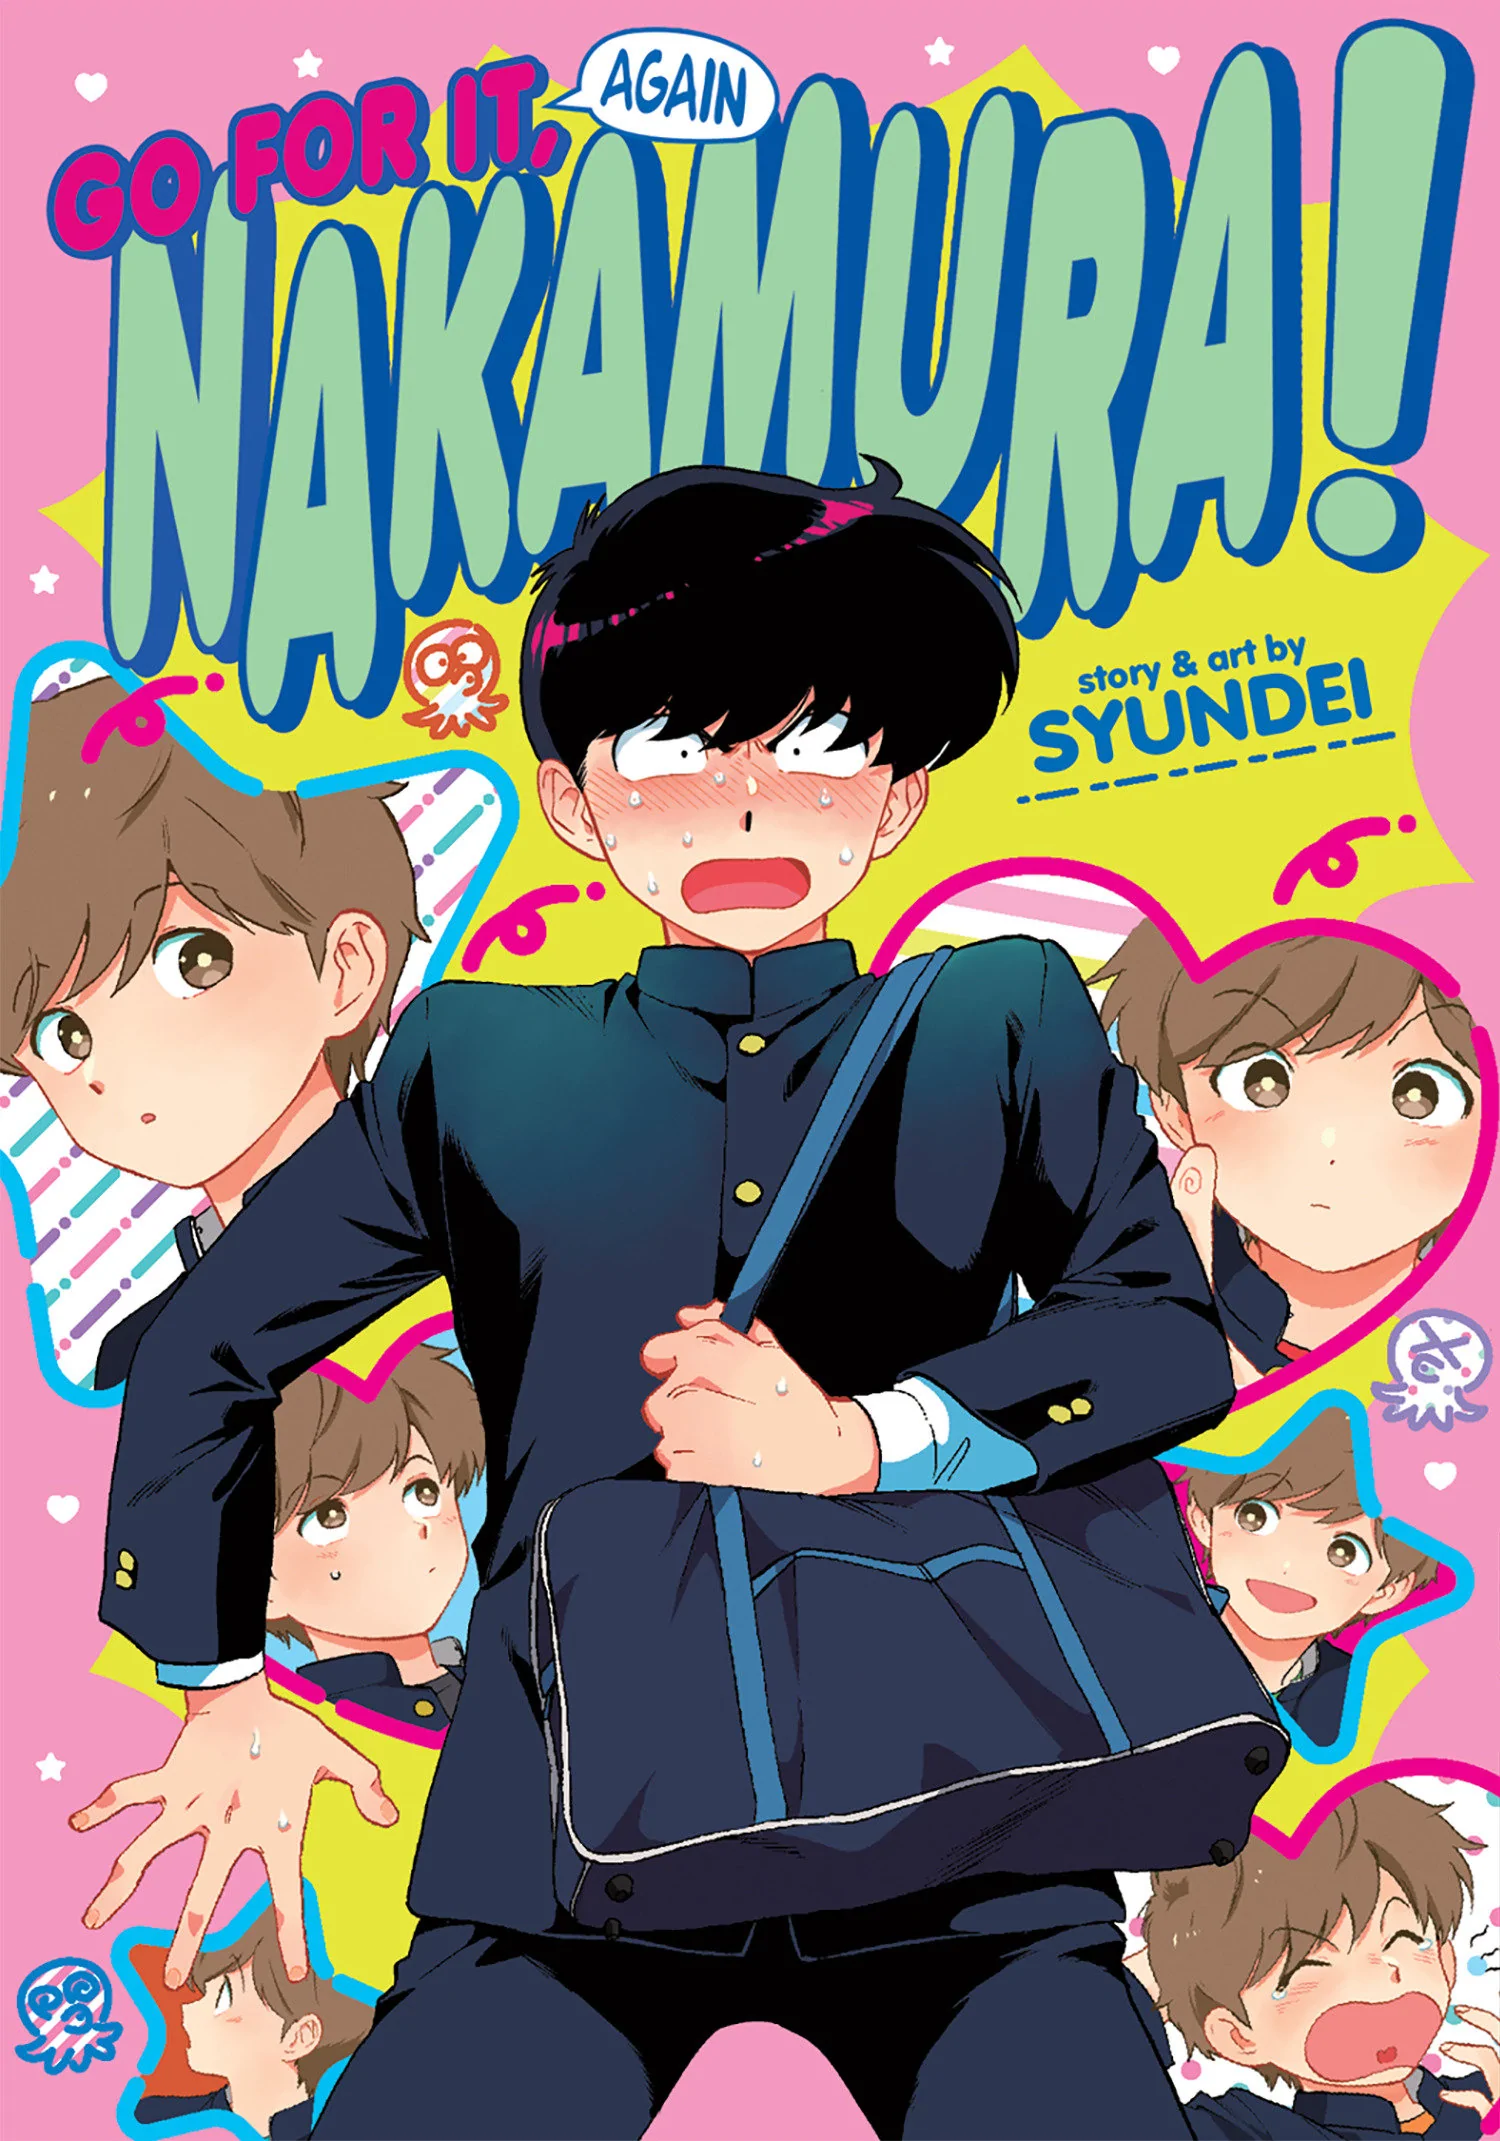 Ganbare! Nakamura-kun!! (Go For It, Nakamura!)